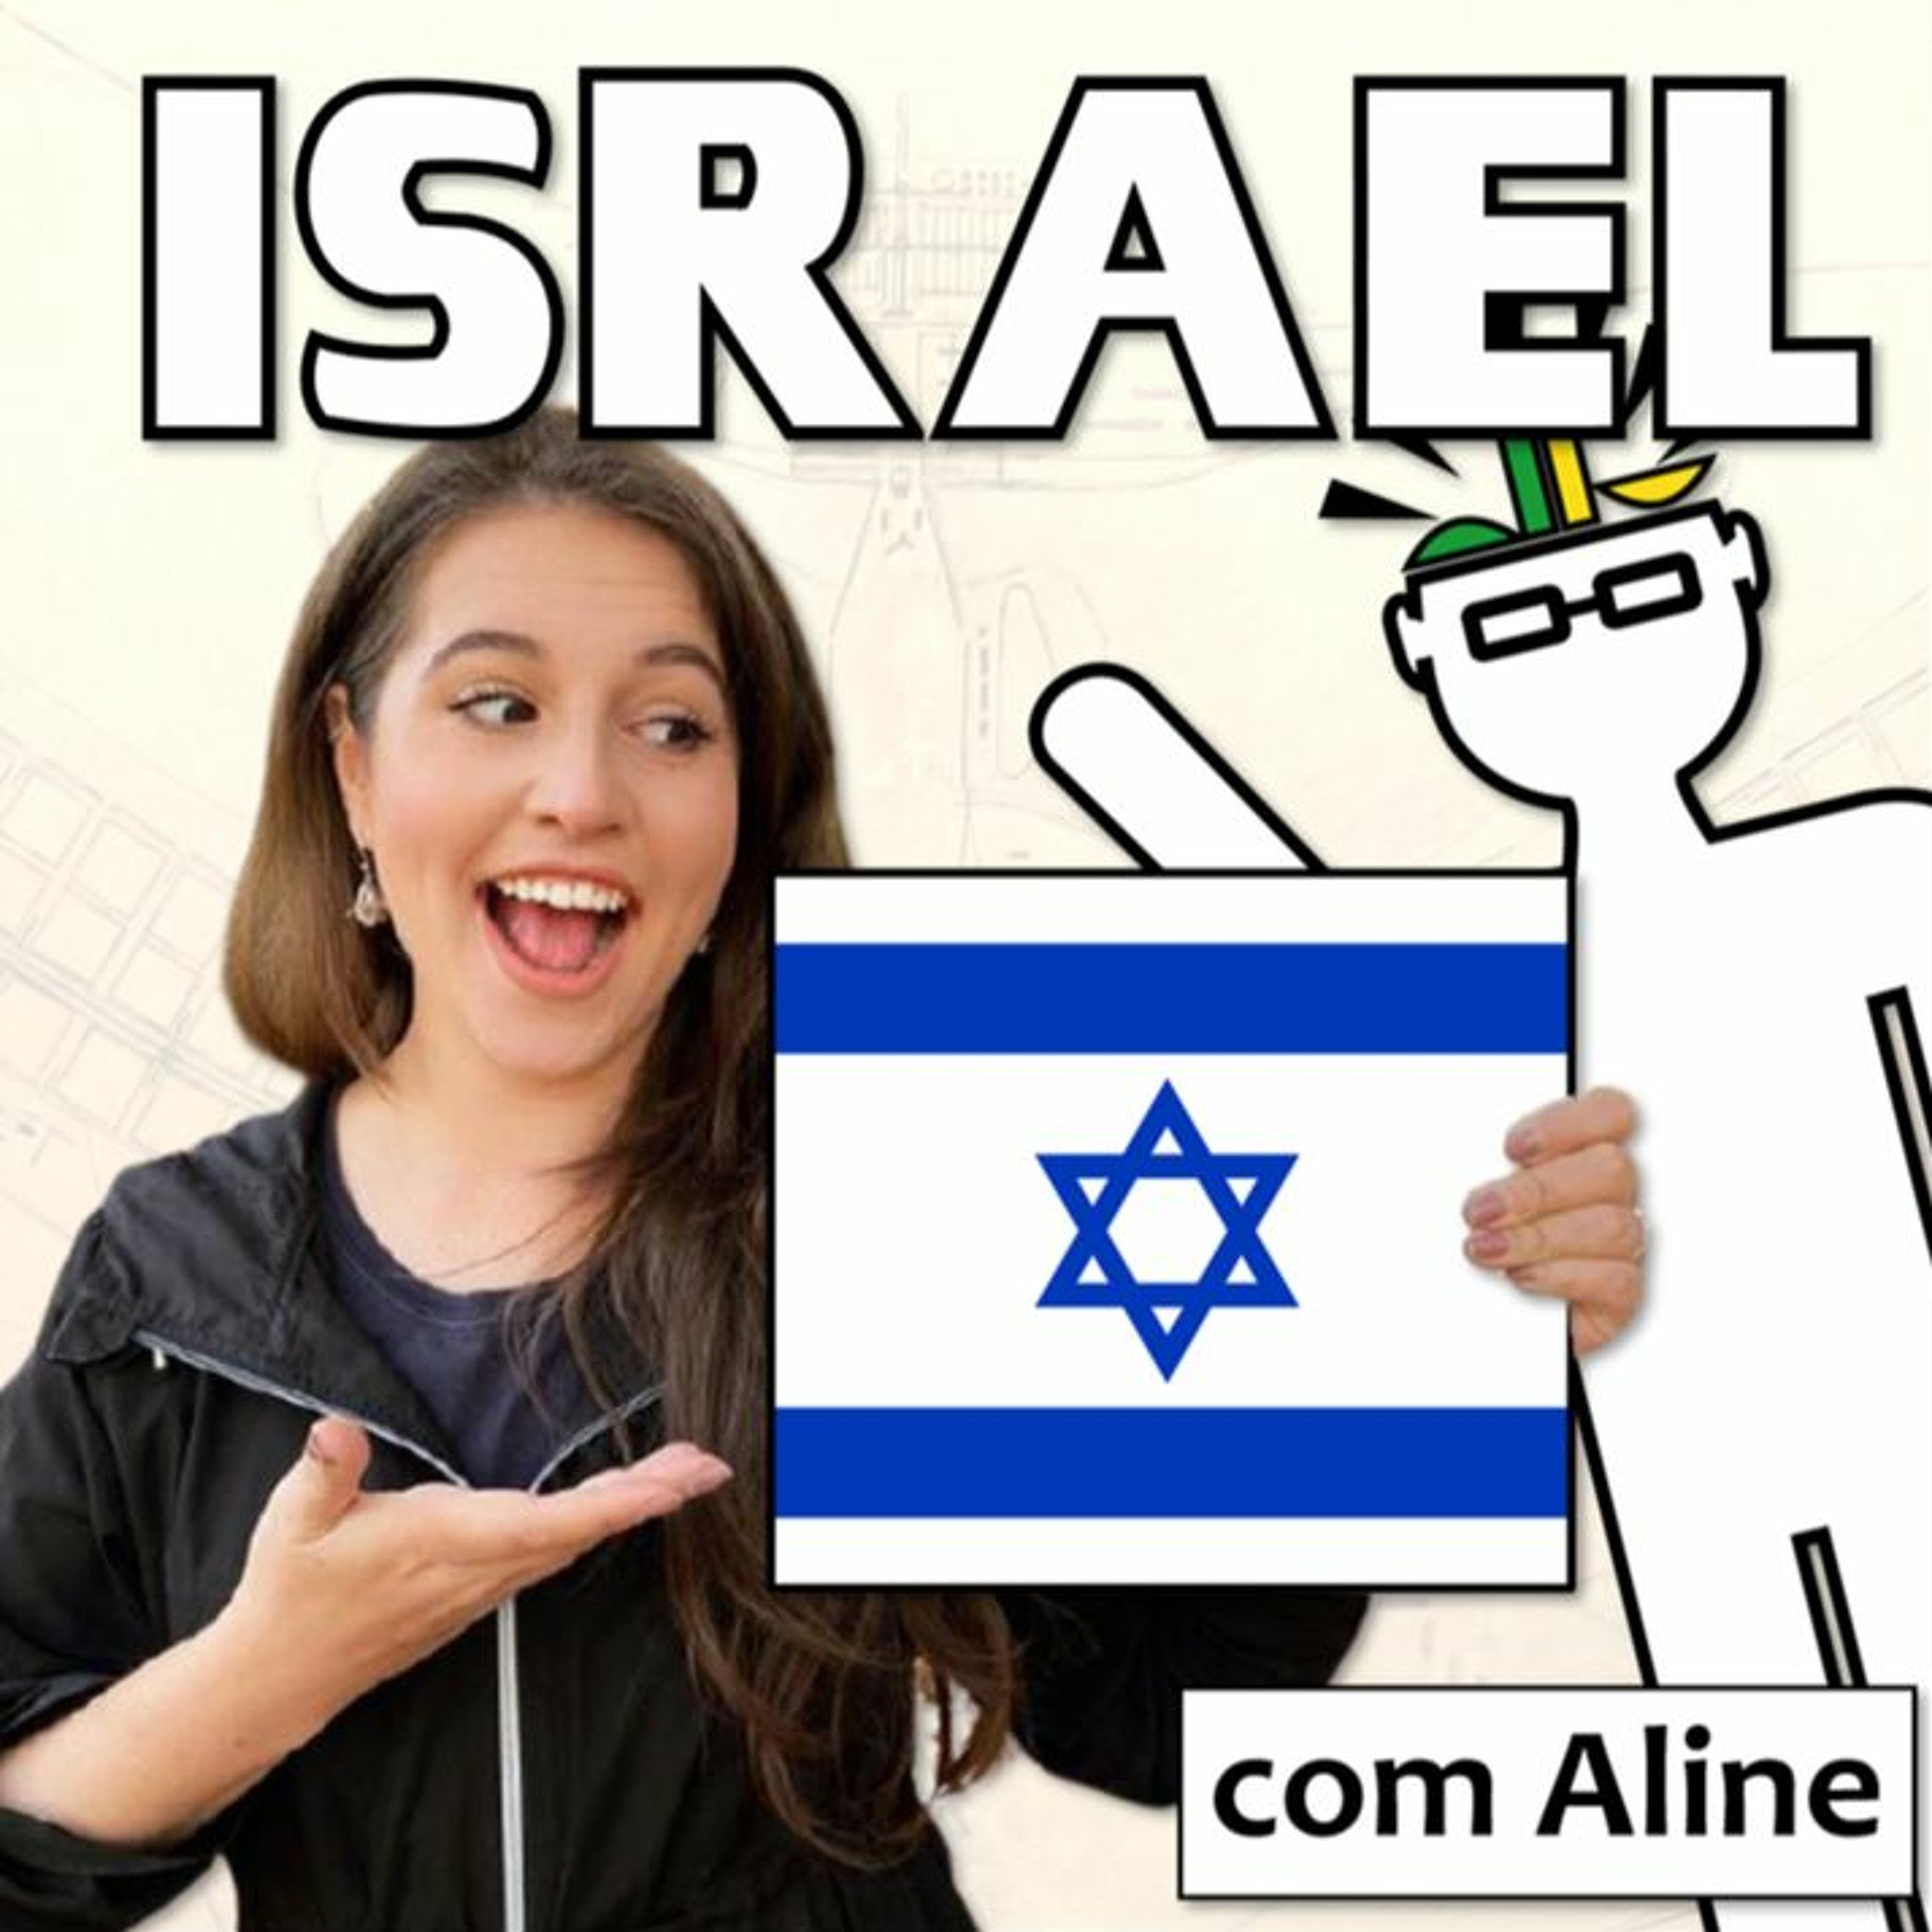 Como é a vida em Israel? 🇮🇱